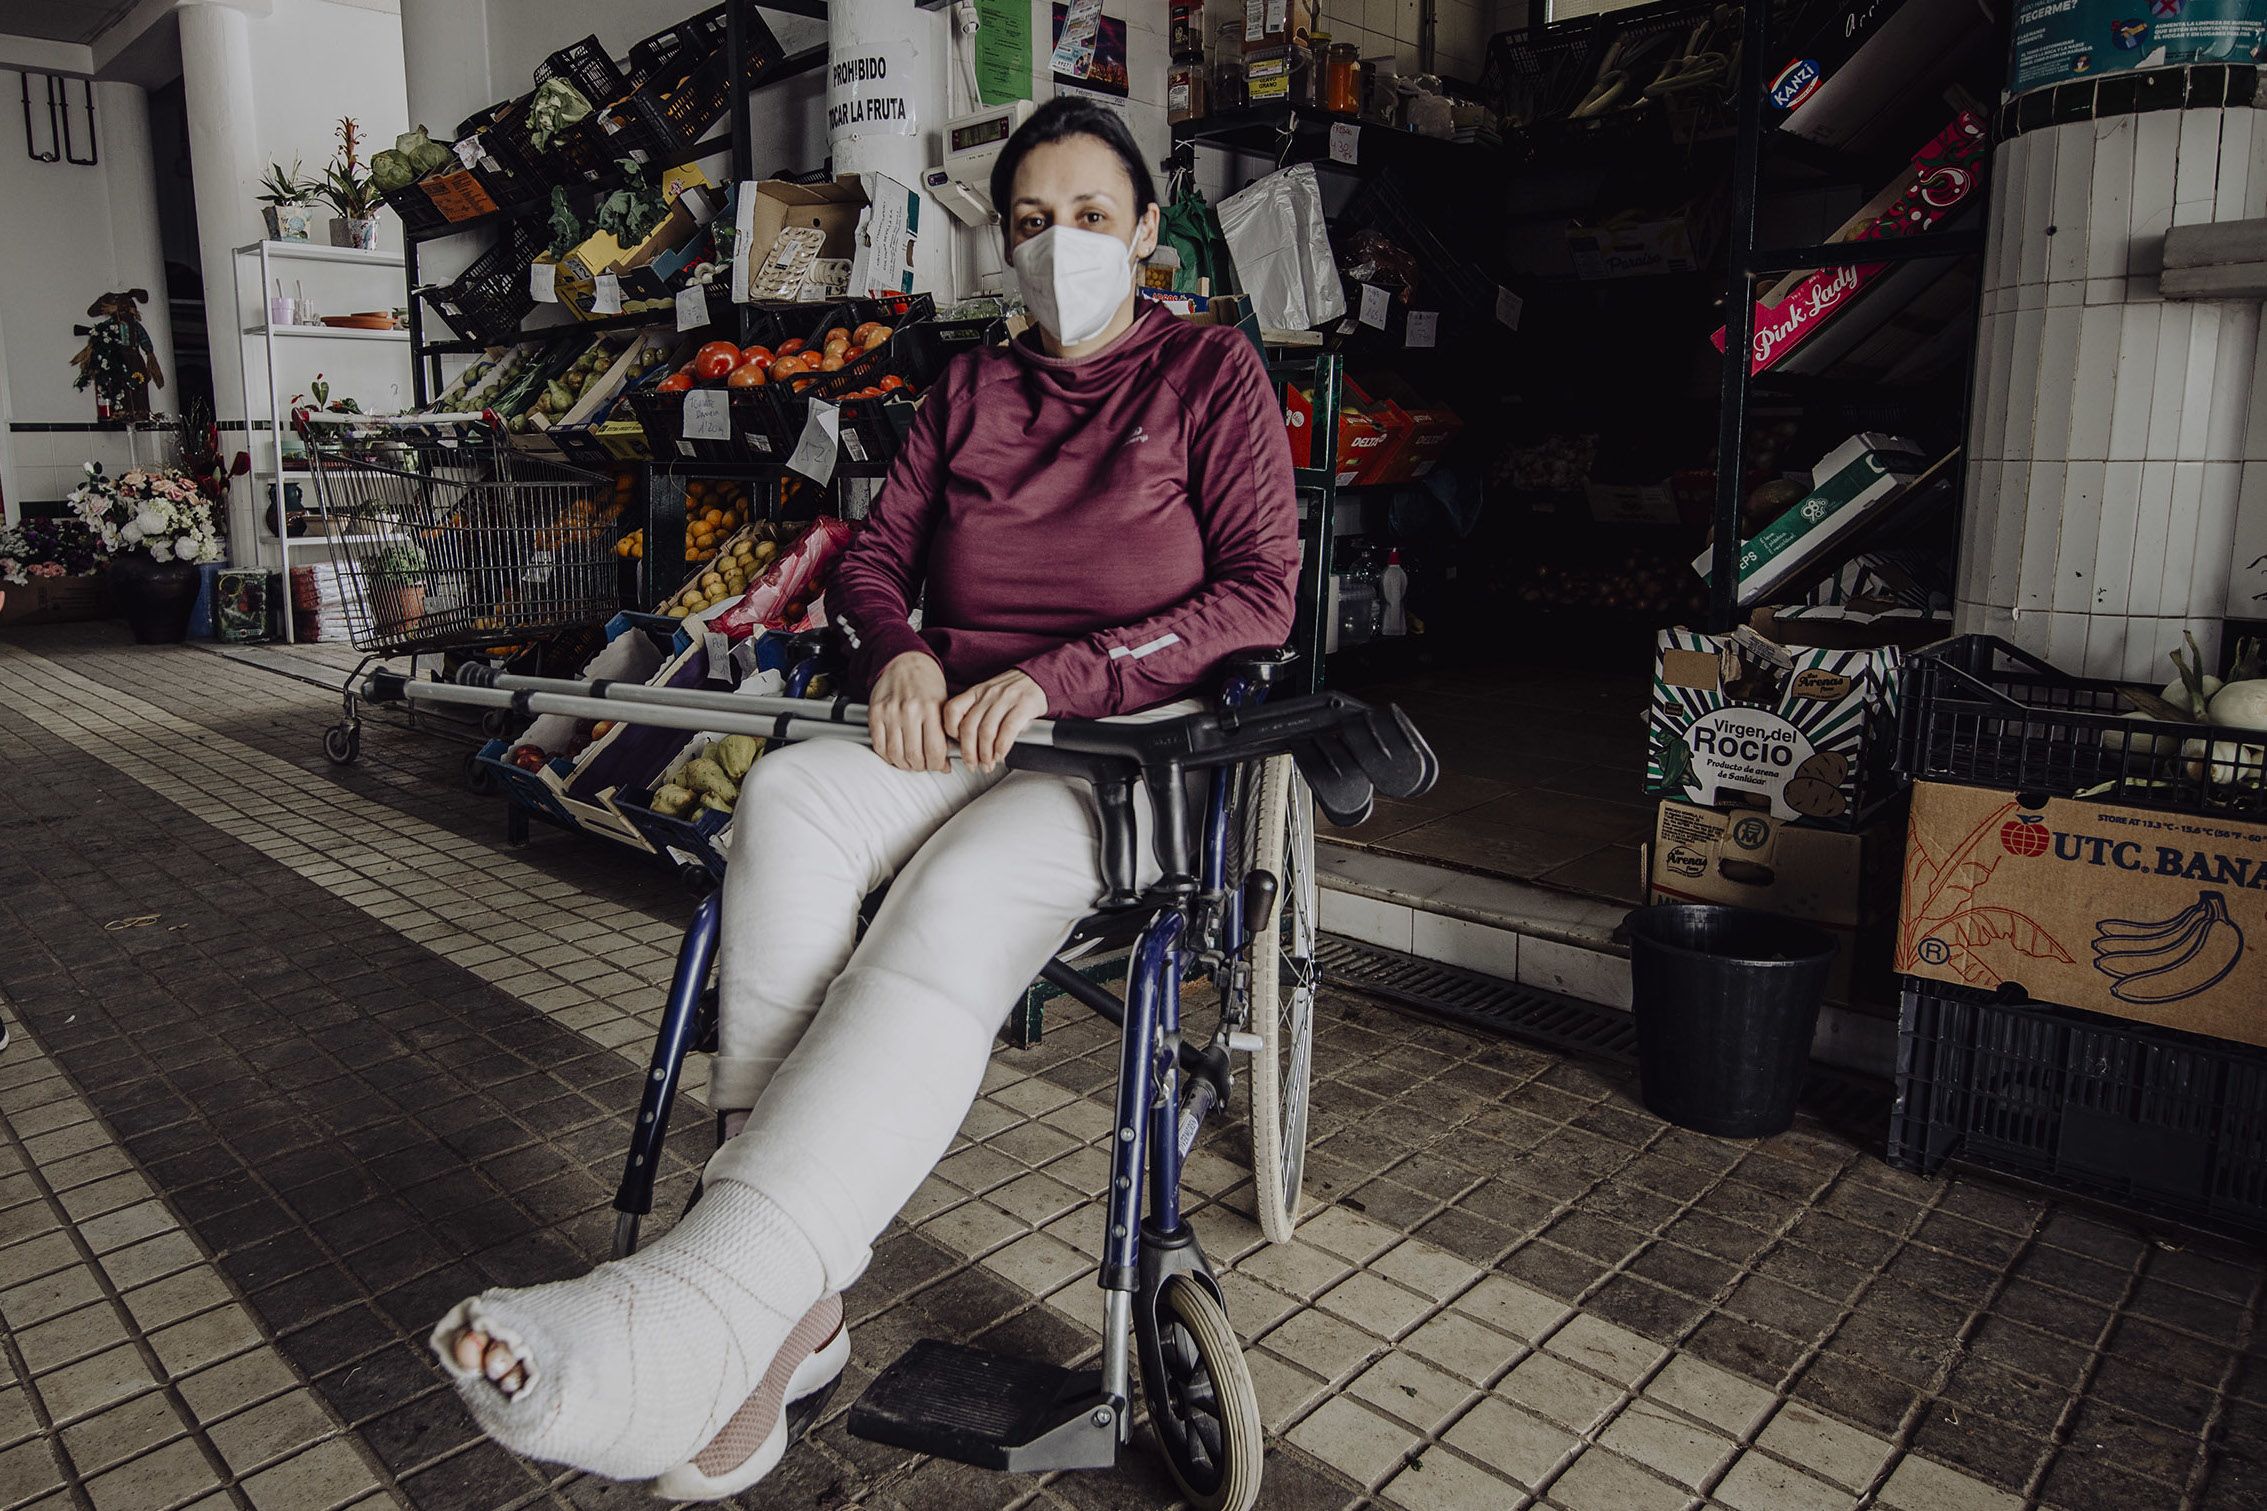 Yolanda, propietaria de una frutería en la plaza, en silla de ruedas tras sufrir un accidente días atrás.